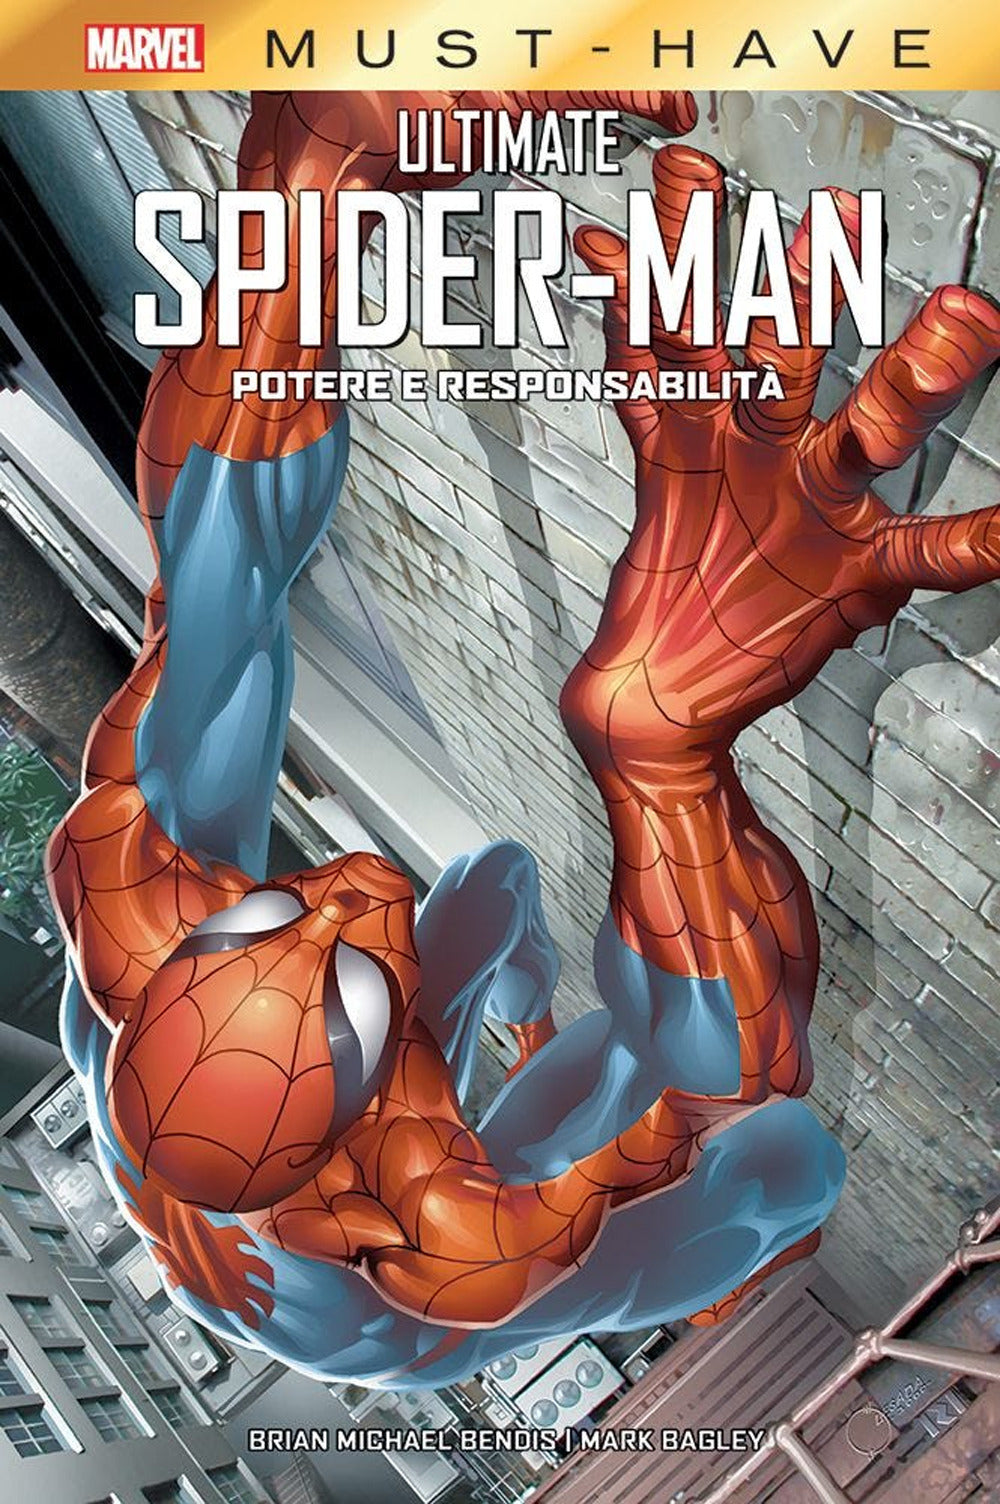 Potere e responsabilità. Ultimate Spider-Man.: libro di Brian Bendis